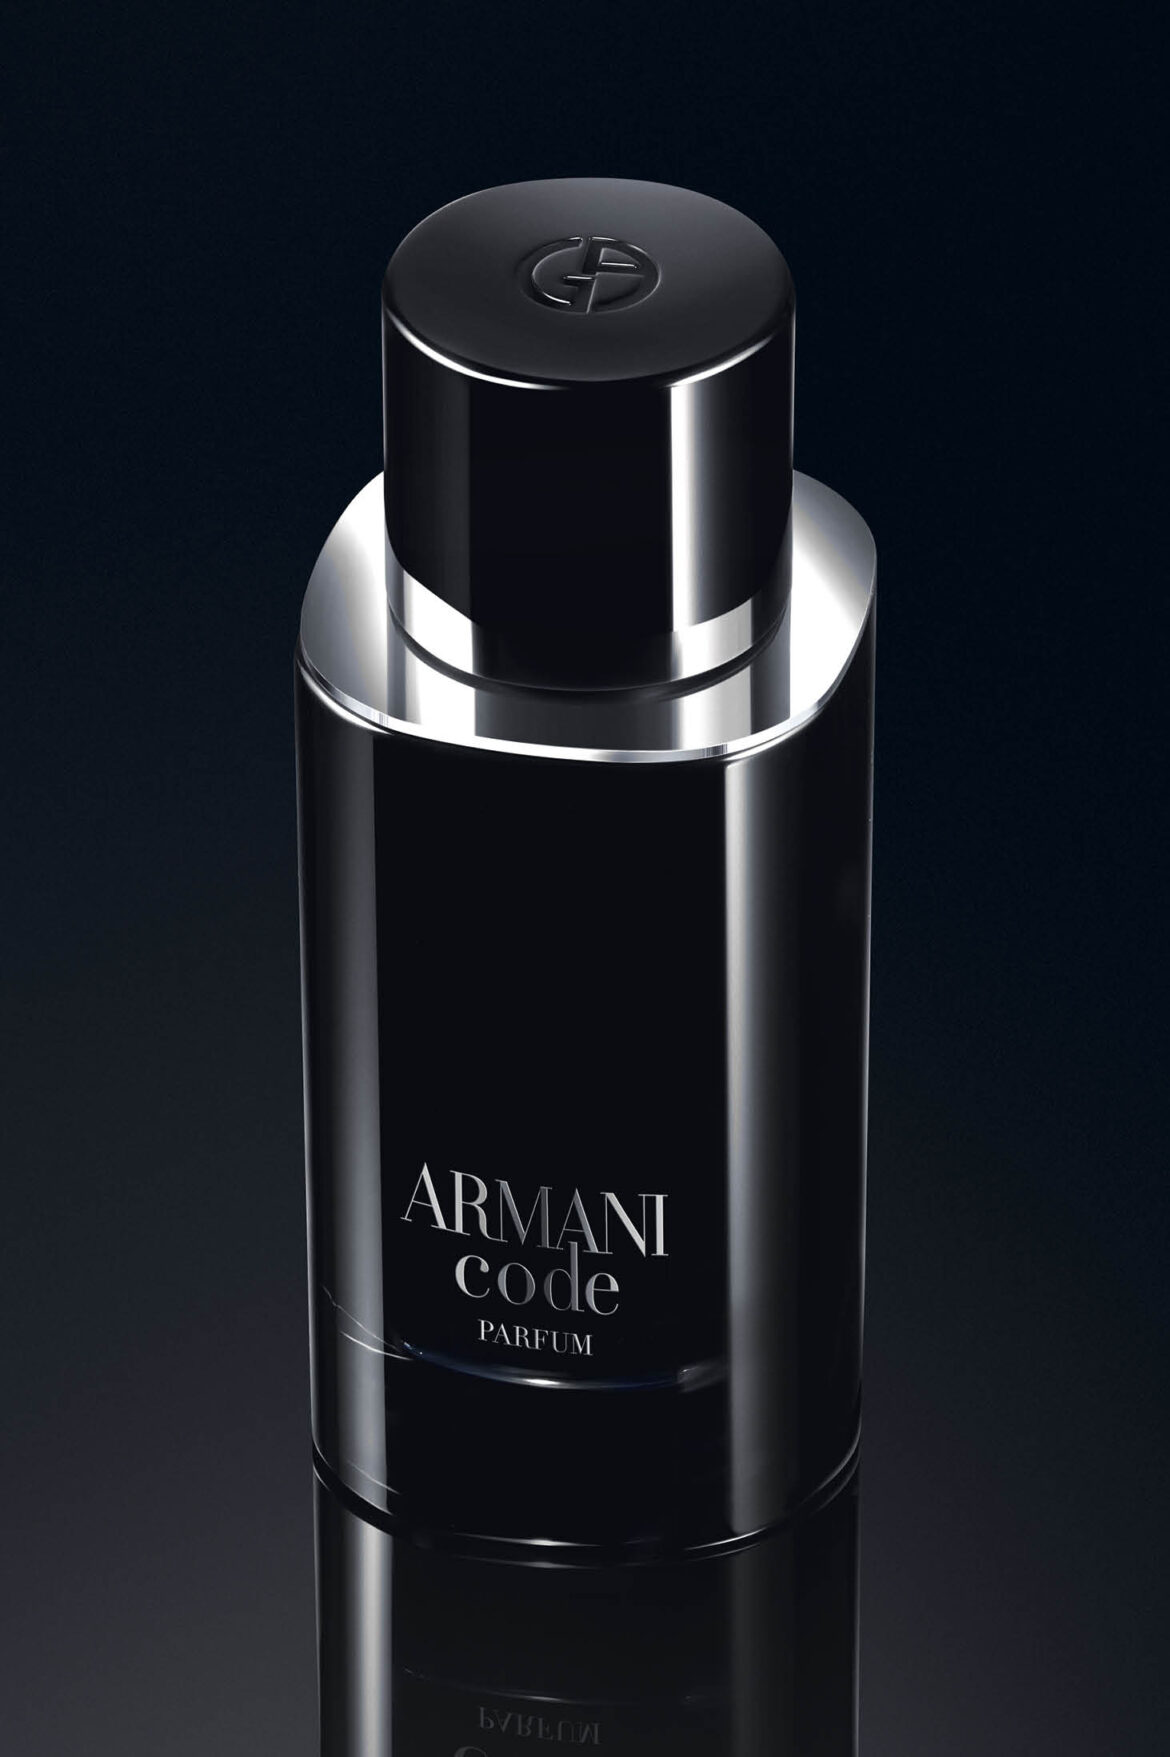 Giorgio Armani presenta el nuevo Armani Code Parfum